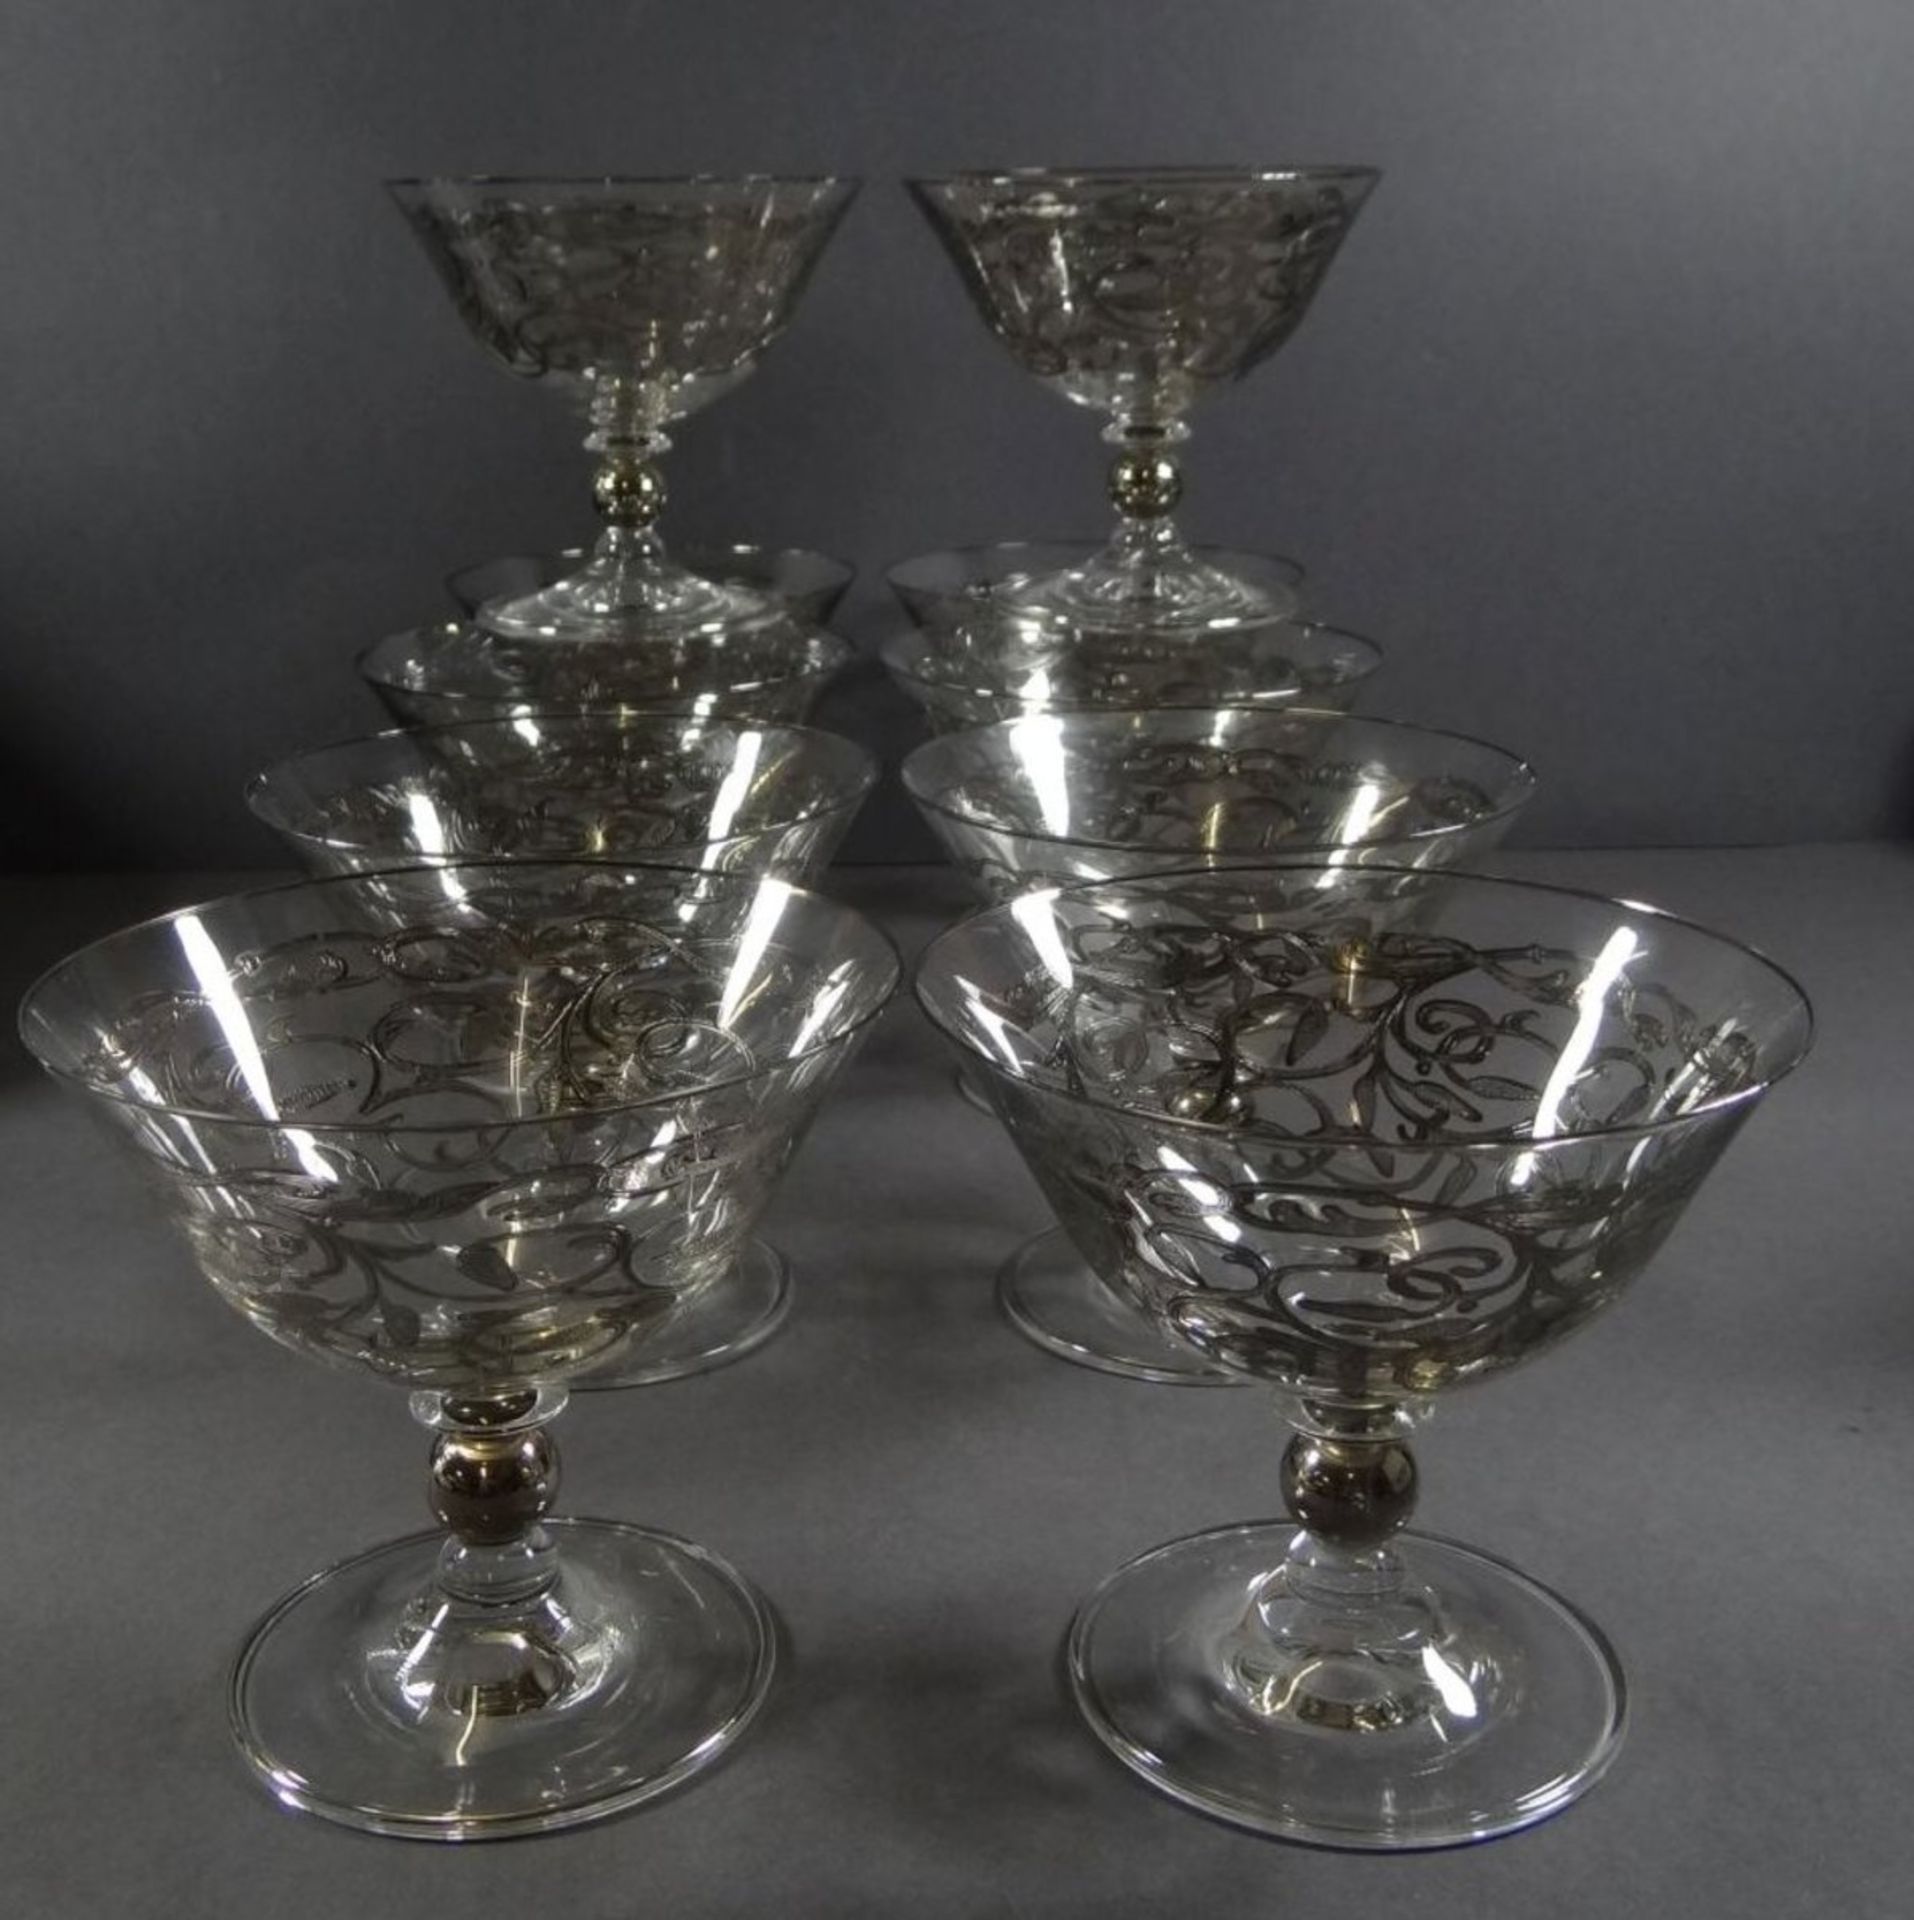 10x Gläser mit Silberoverlay, Cocktail-Sekt?, H-11 cm, D-12 cm